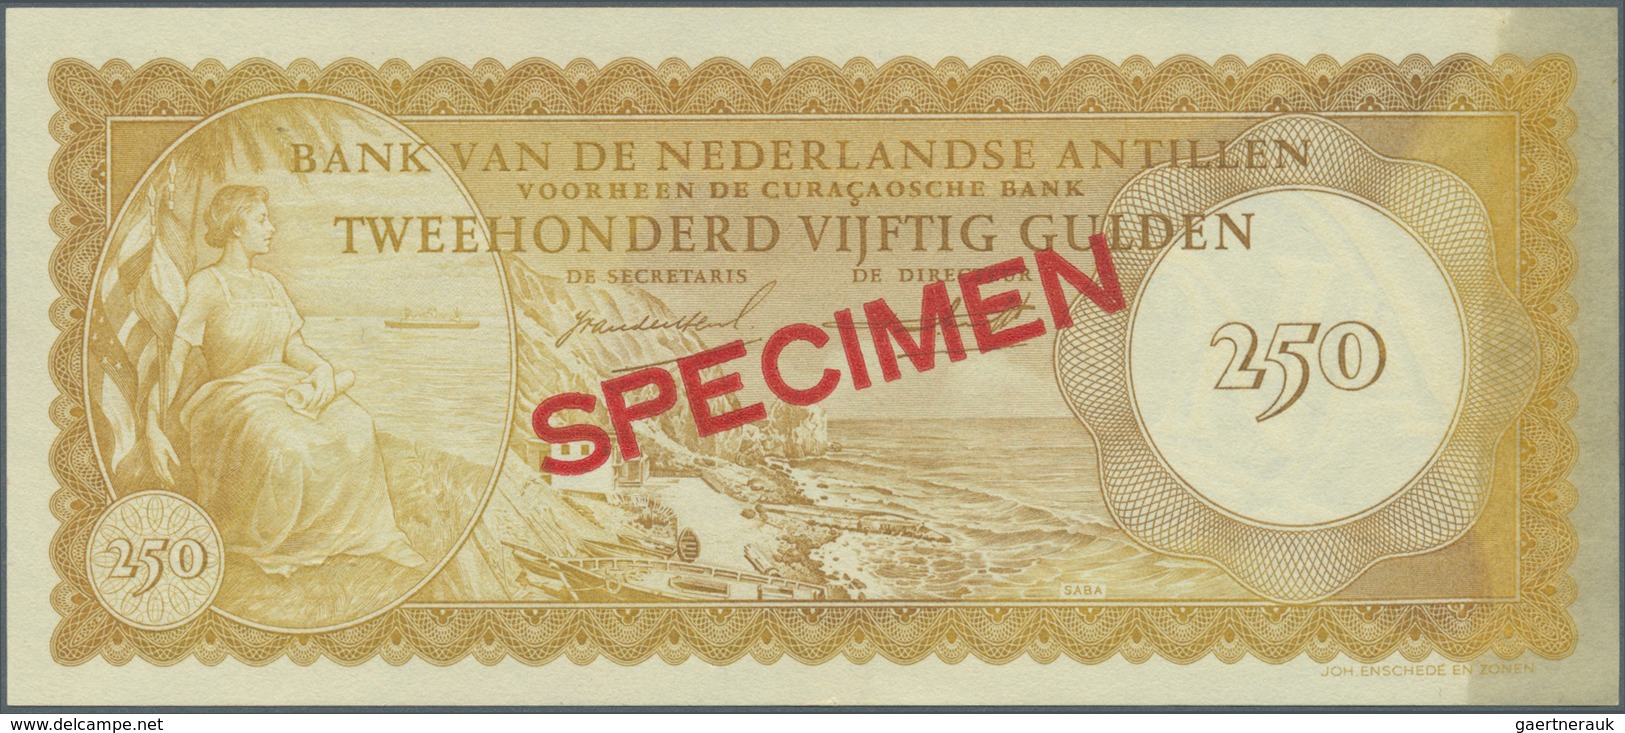 02050 Netherlands Antilles / Niederländische Antillen: 250 Gulden 1962 Specimen P. 6s With 012345 Serial N - Antille Olandesi (...-1986)